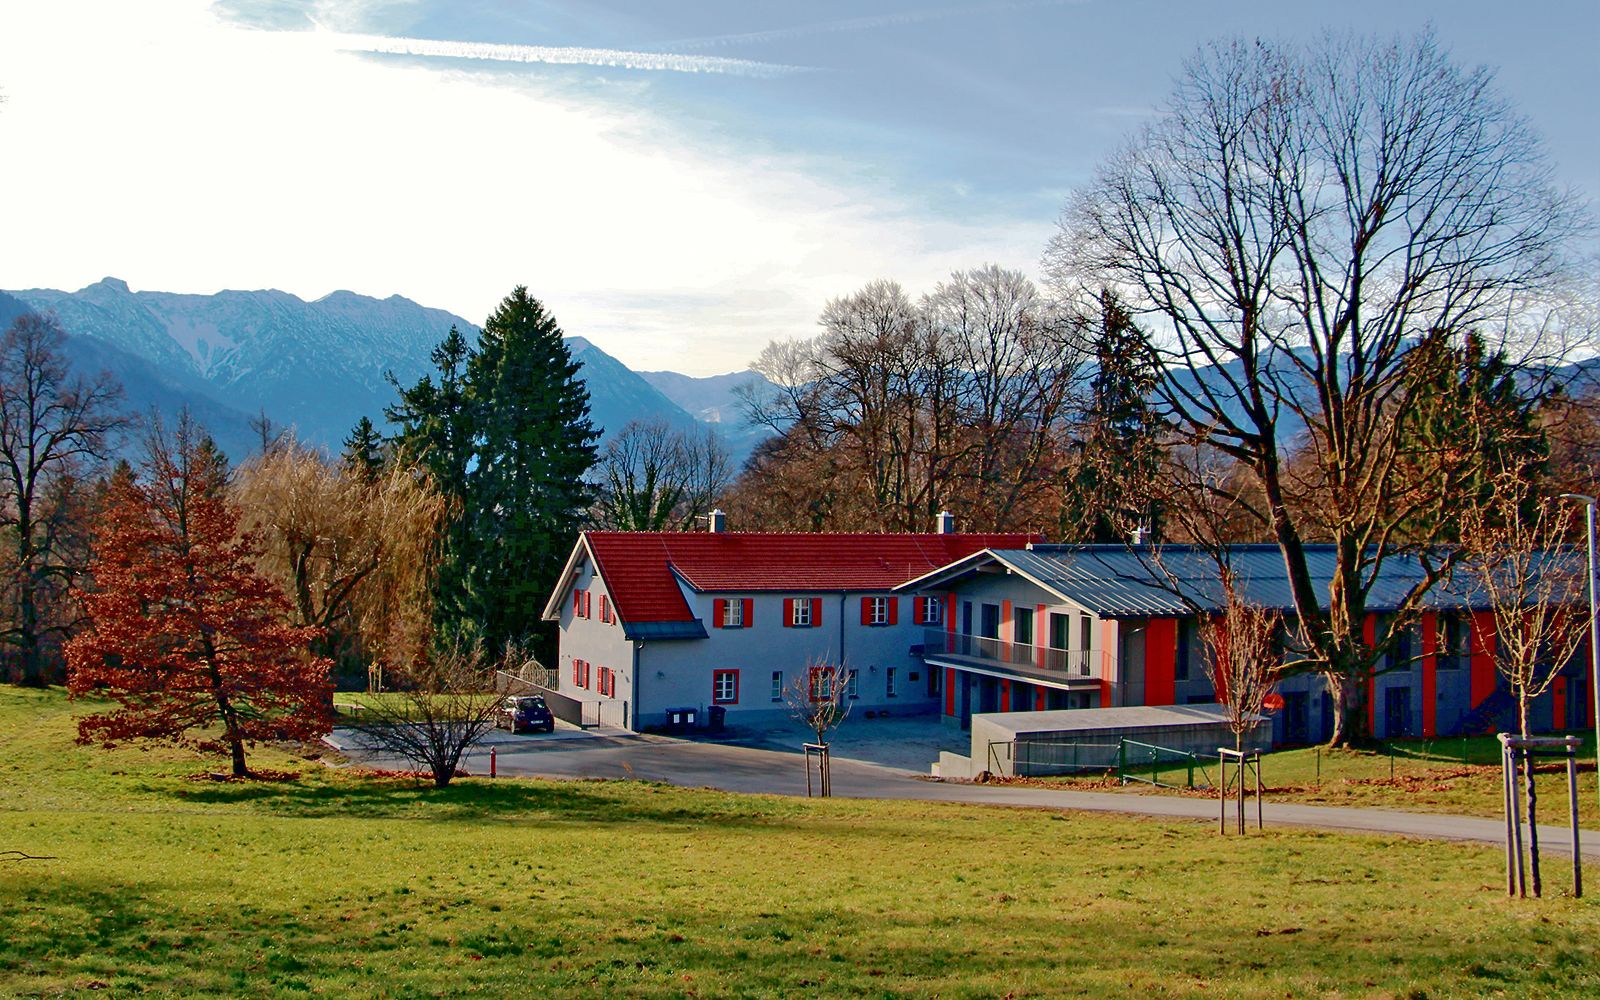 Ein Foto des Isle-Erl-Hauses, welches mitten in der Natur steht. Das Gebäude besteht aus zwei länglichen, mehrstöckigen Häusern, welche aneinandergebaut sind. Es ist von großen Bäumen umgeben und im Hintergrund erheben sich Berge.